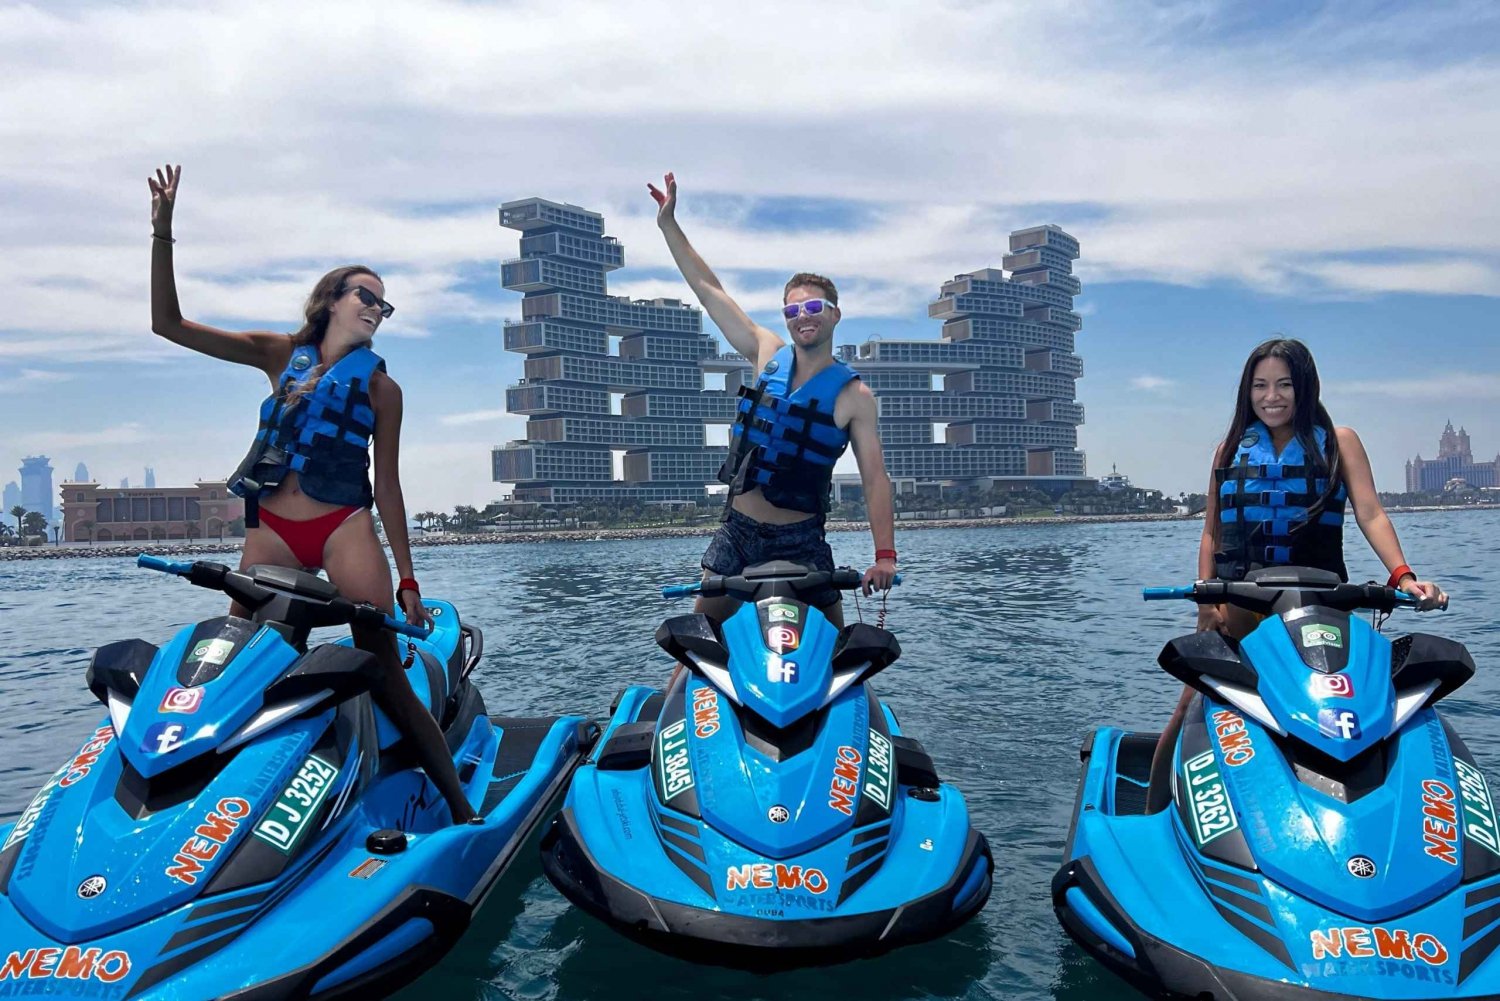 Dubai: Excursión en moto acuática a Burj Al Arab y Atlantis